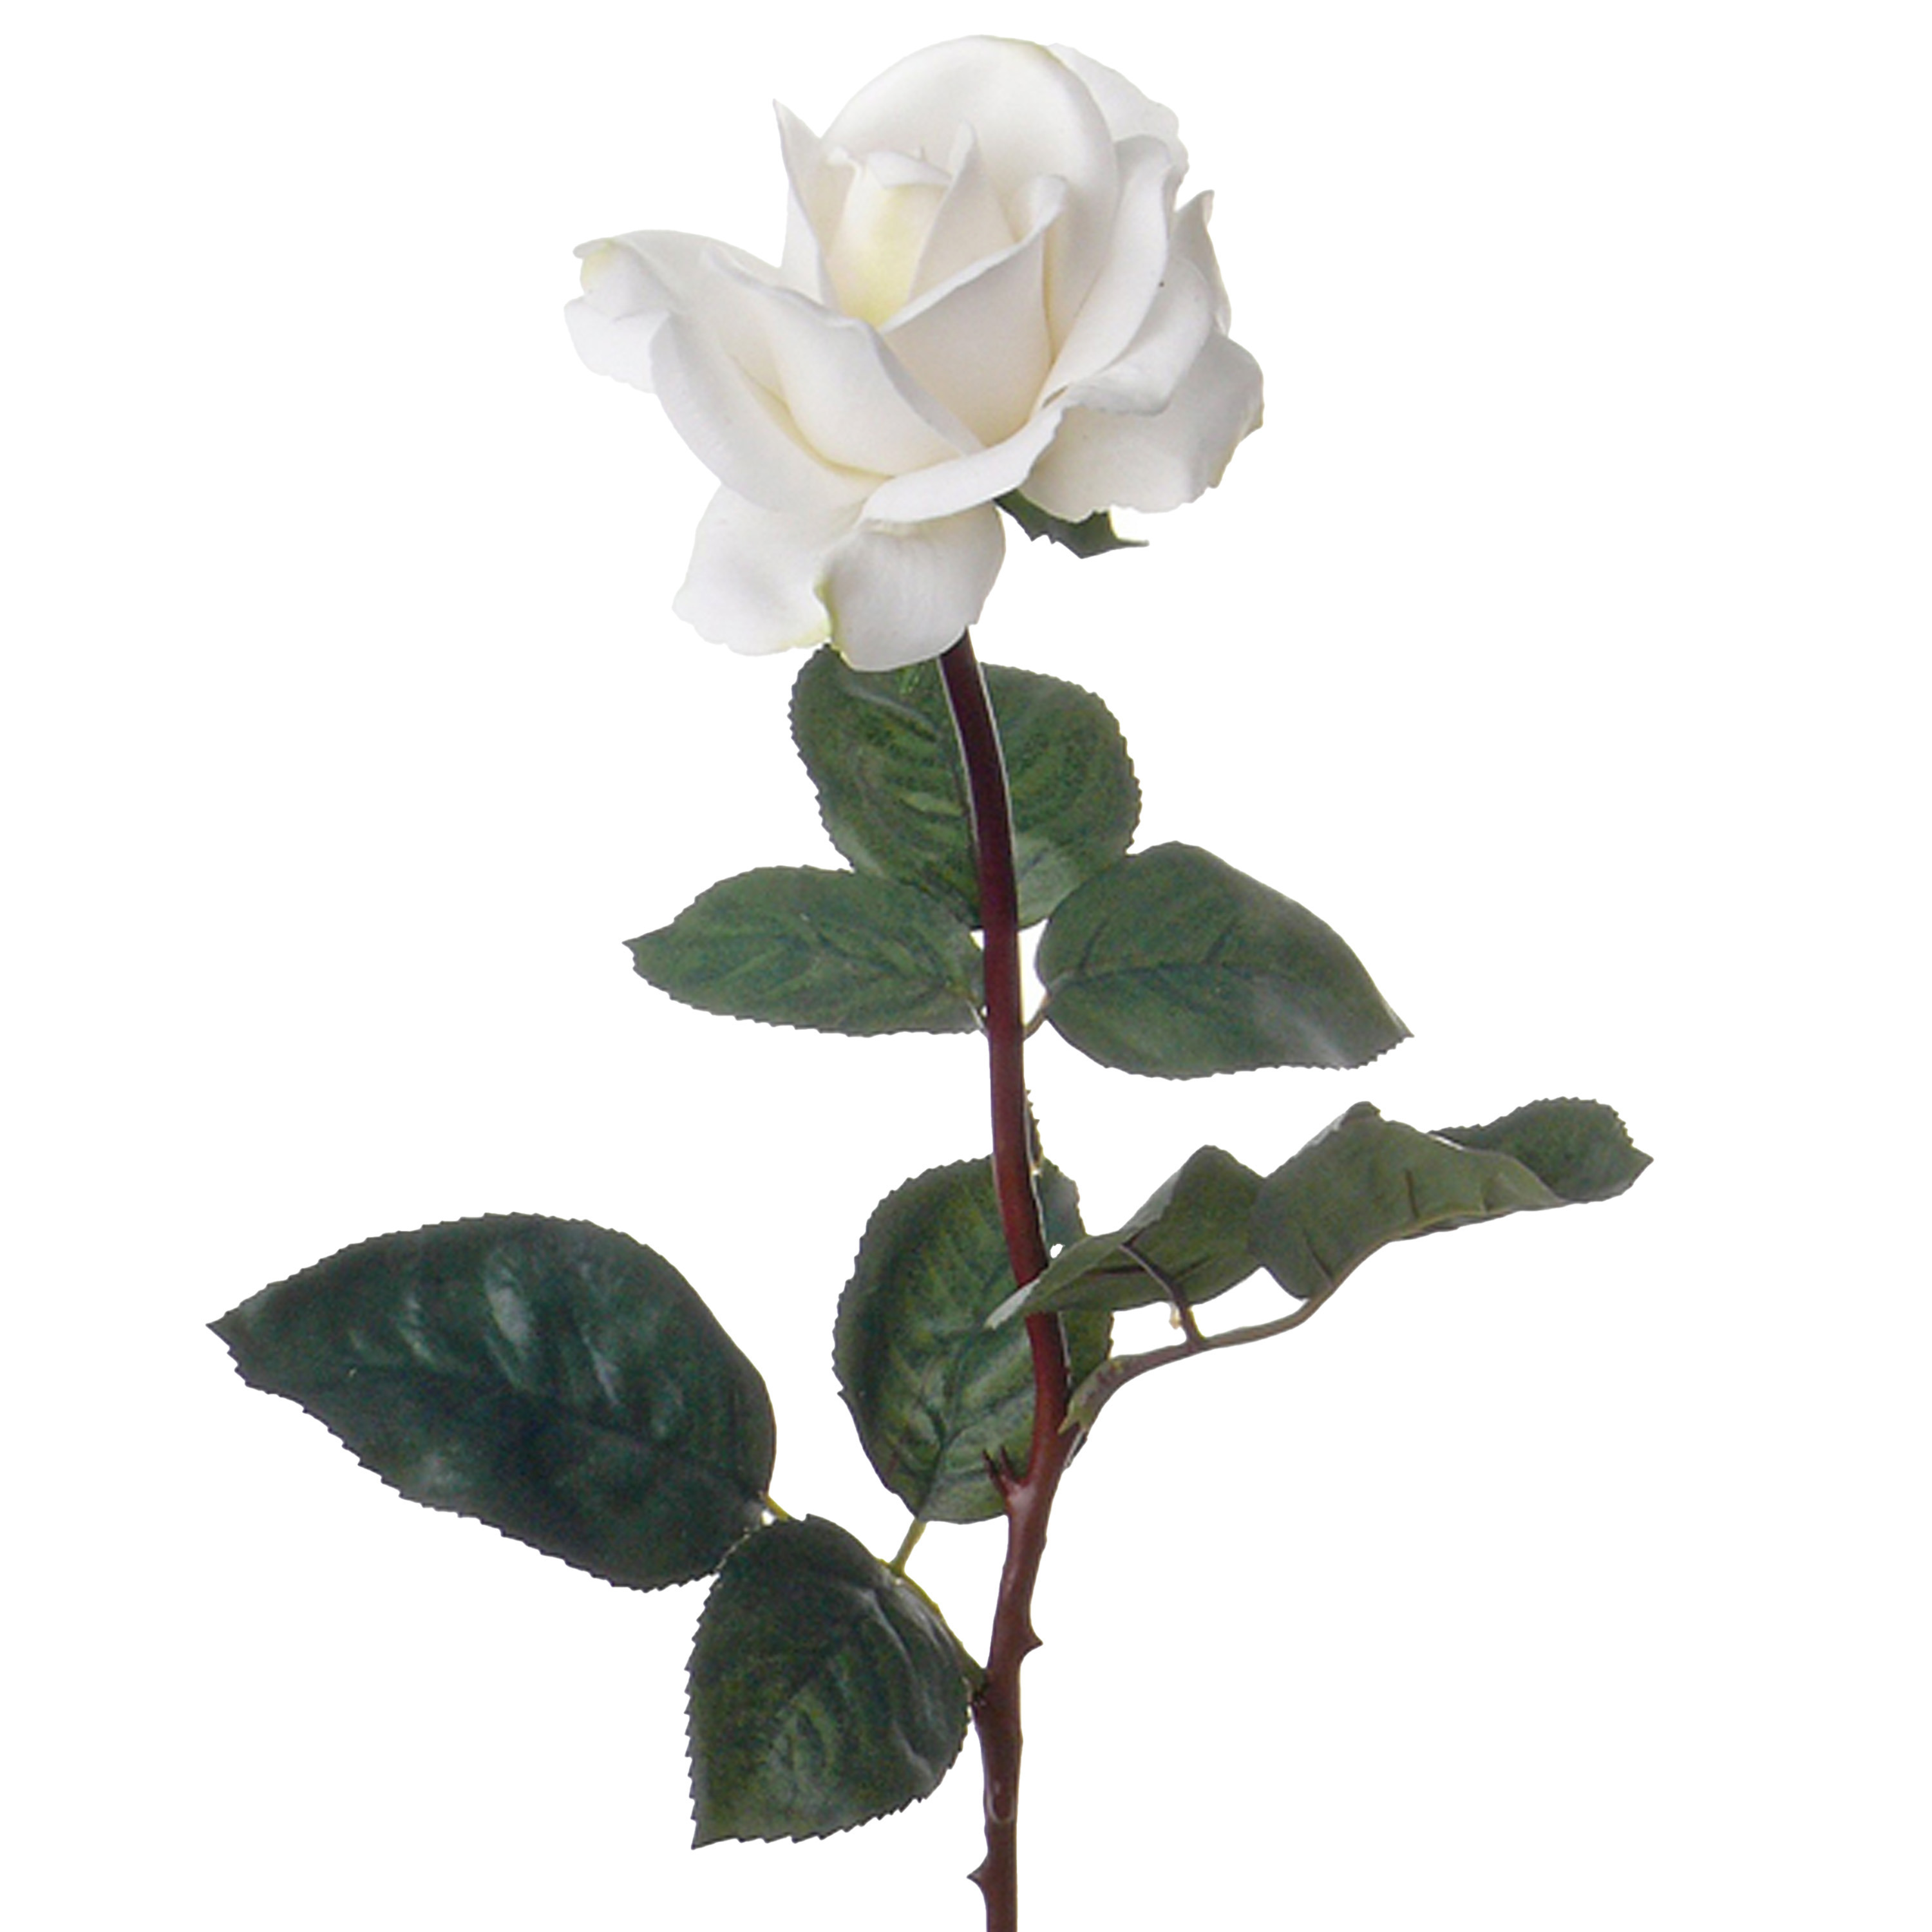 Afbeelding van Kunstbloem roos Caroline - wit - 70 cm - zijde - kunststof steel - decoratie bloemen